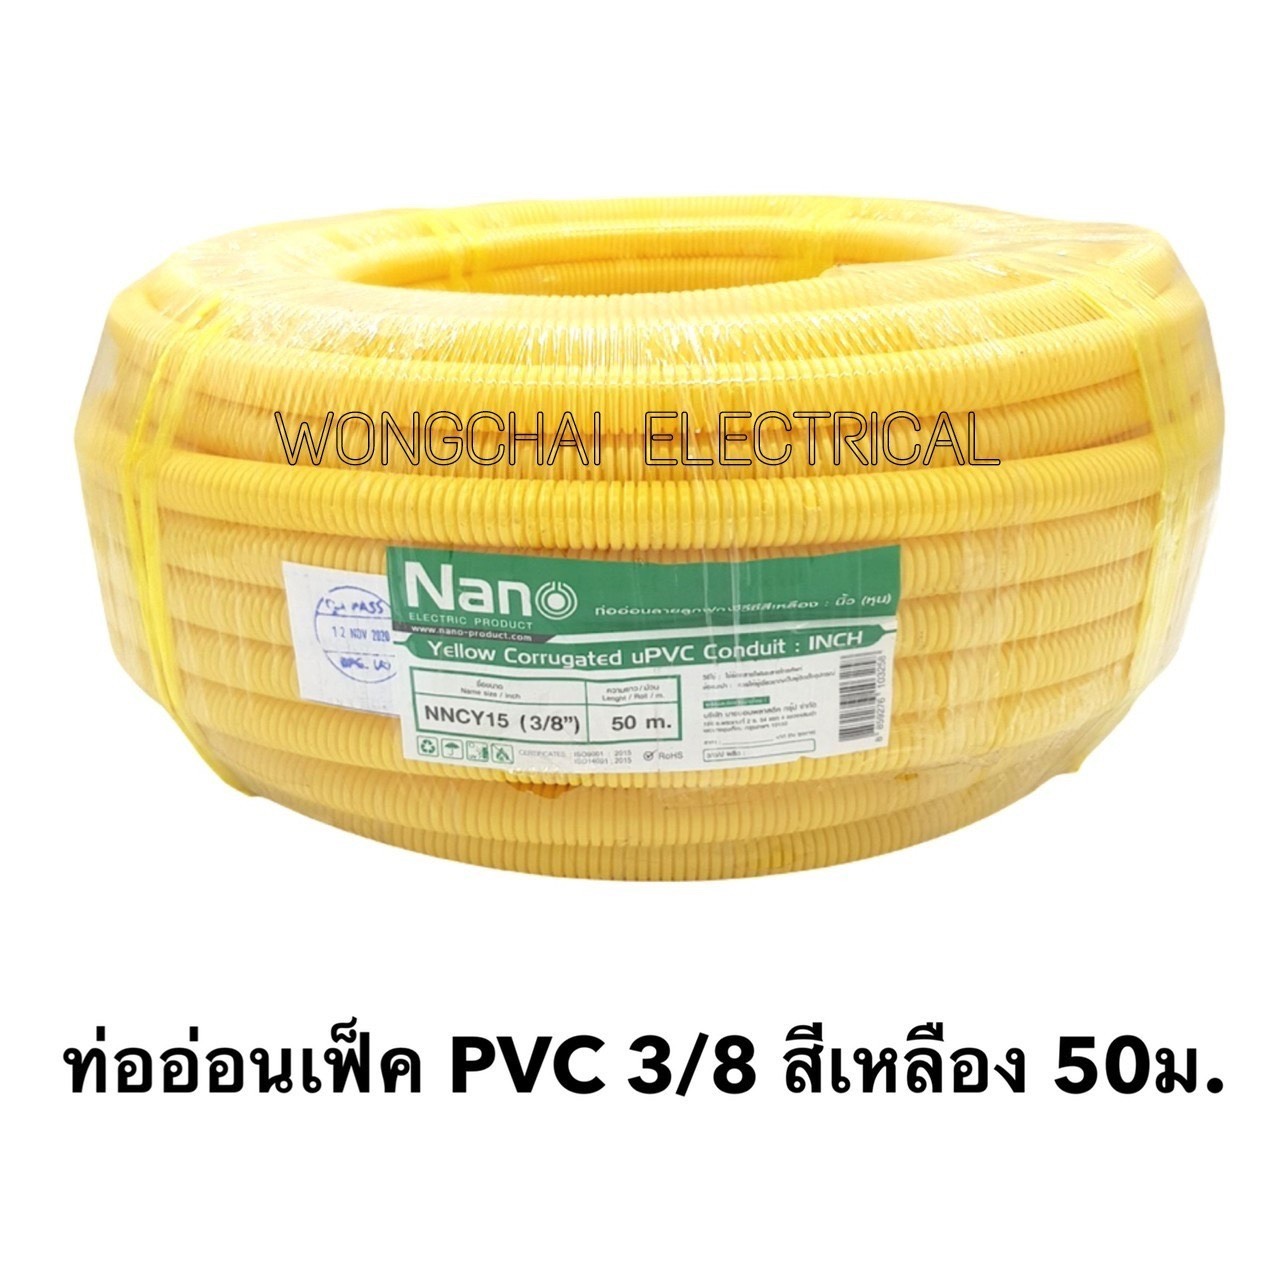 ท่อลูกฟูกPVC สีเหลือง ขนาด 3/8 (3หุน) ม้วนละ 50 ม. NaNo ท่อย่น ท่ออ่อน ท่อเฟล็ก ท่อ flex pvc